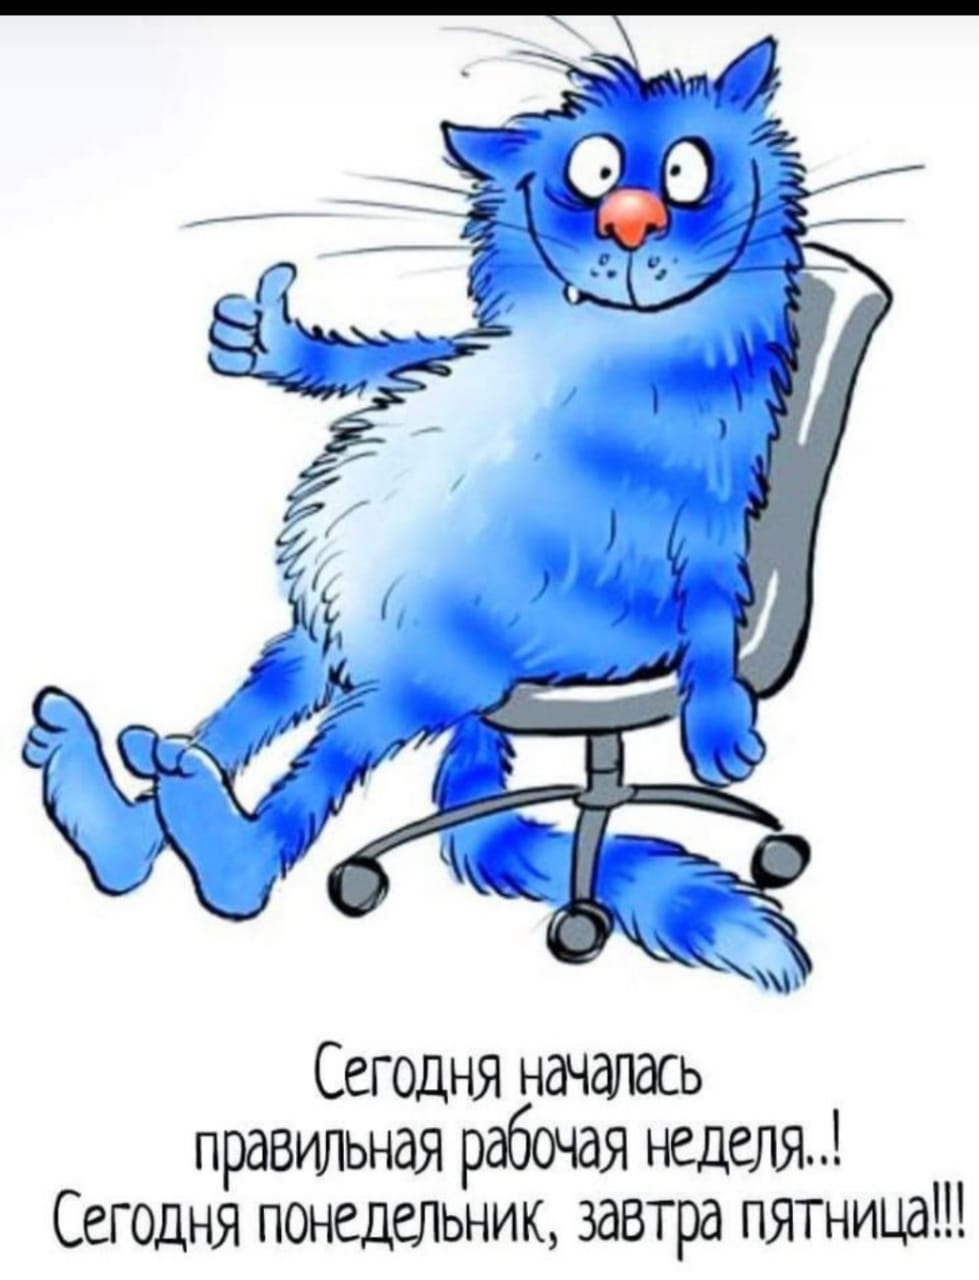 Конец рабочего понедельника. Синие коты. Синий кот с надписями. Синие коты с надписями. Синие коты понедельник.